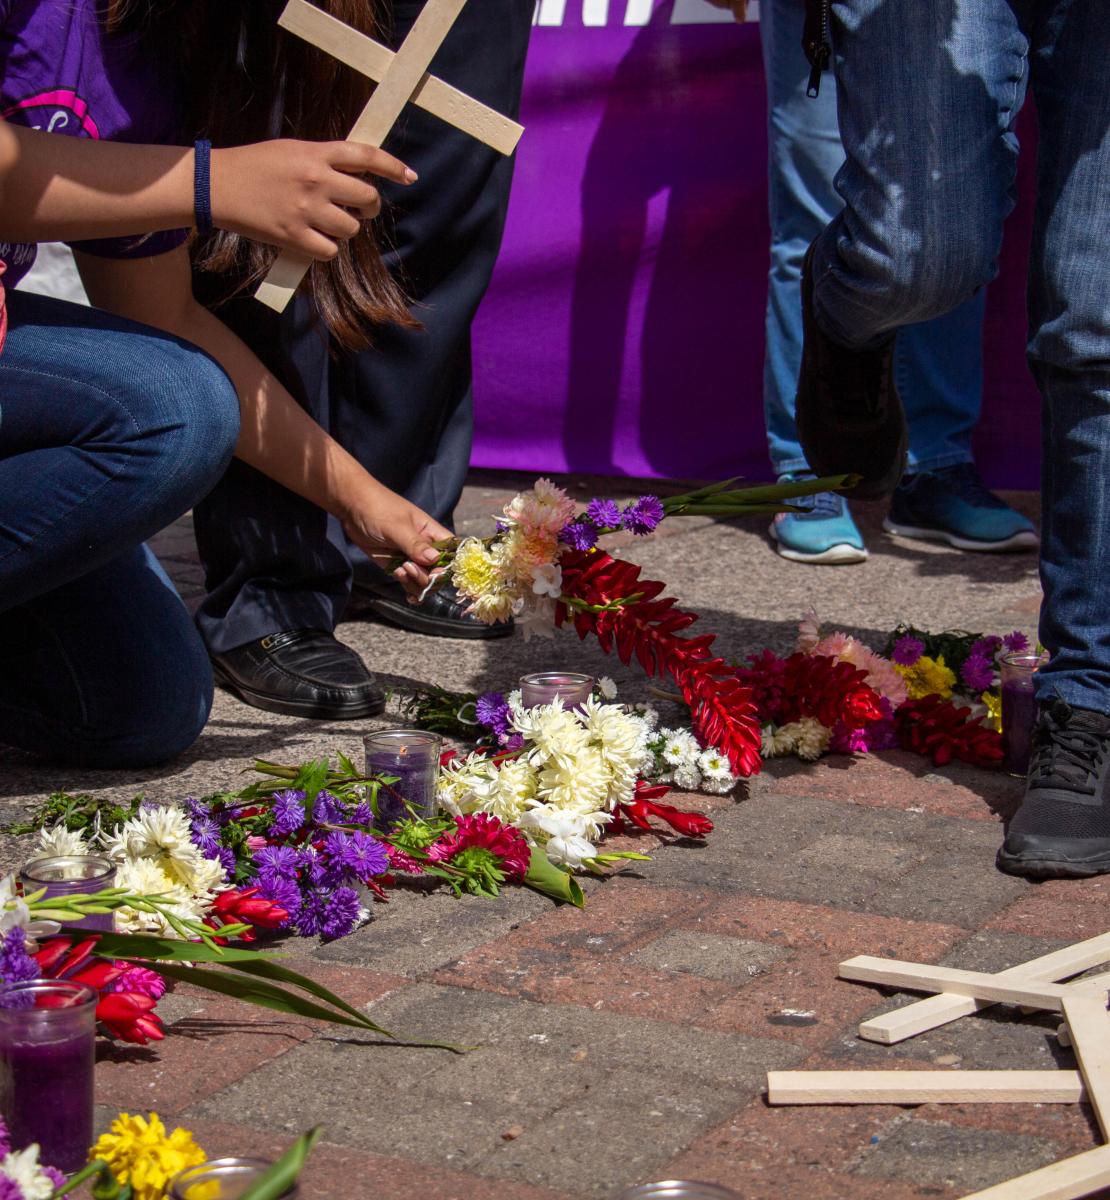 La imagen muestra los brazos de las personas que sostienen cruces arrodilladas junto a flores y más cruces amontonadas.